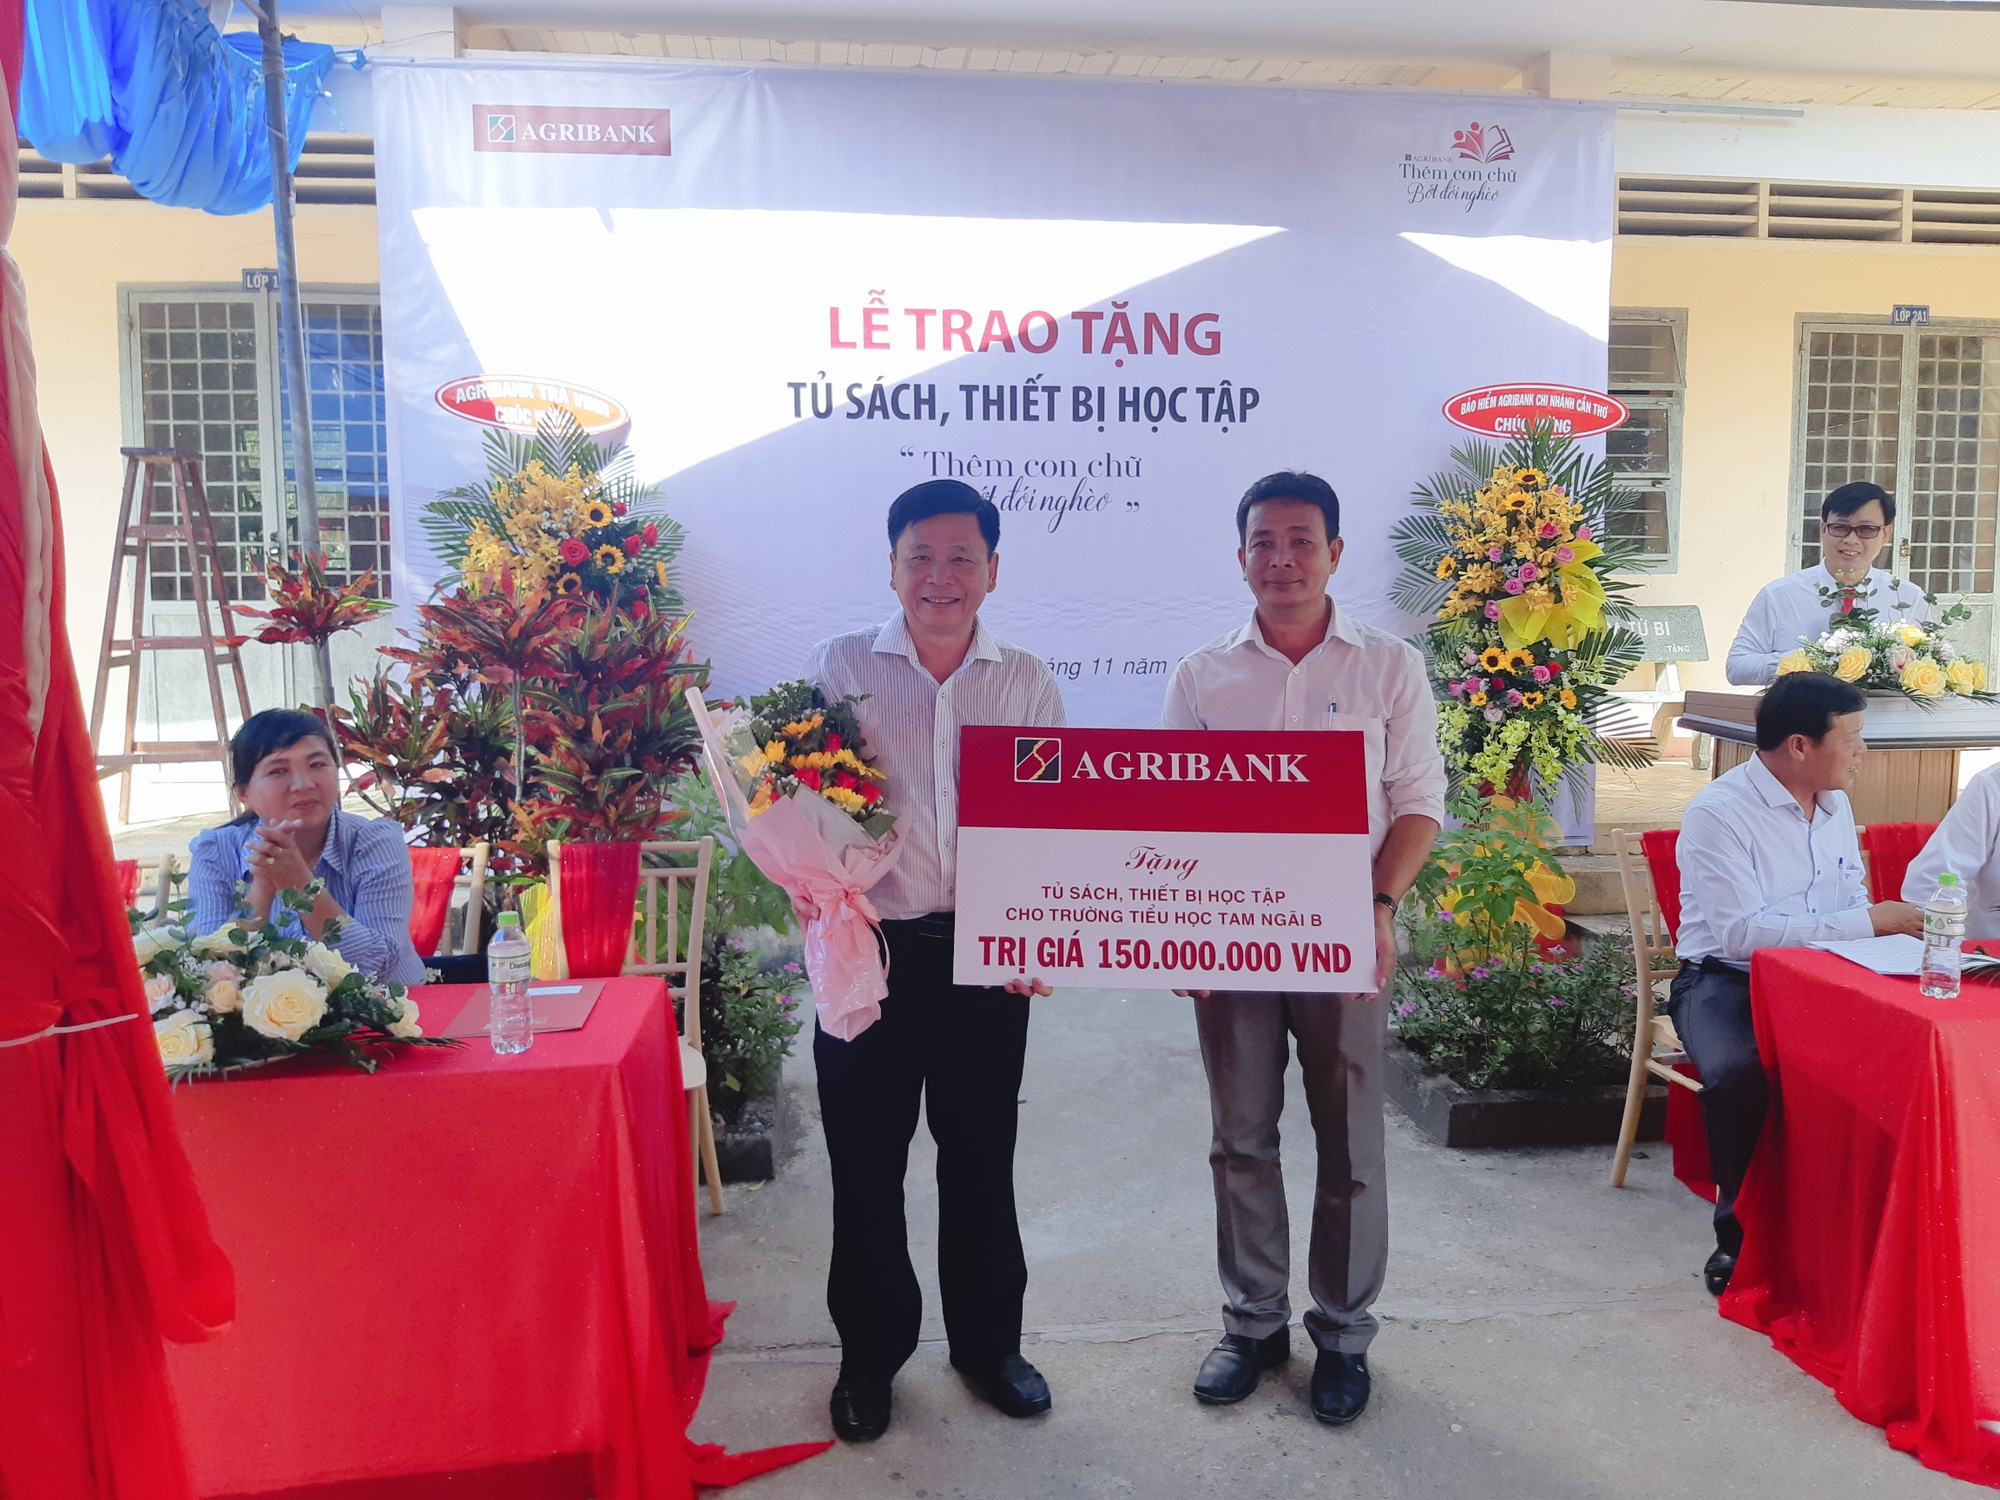 Agribank Chi nhánh Trà Vinh: Tặng tủ sách, dụng cụ học tập cho trường Tiểu học Tam Ngãi B - Ảnh 2.